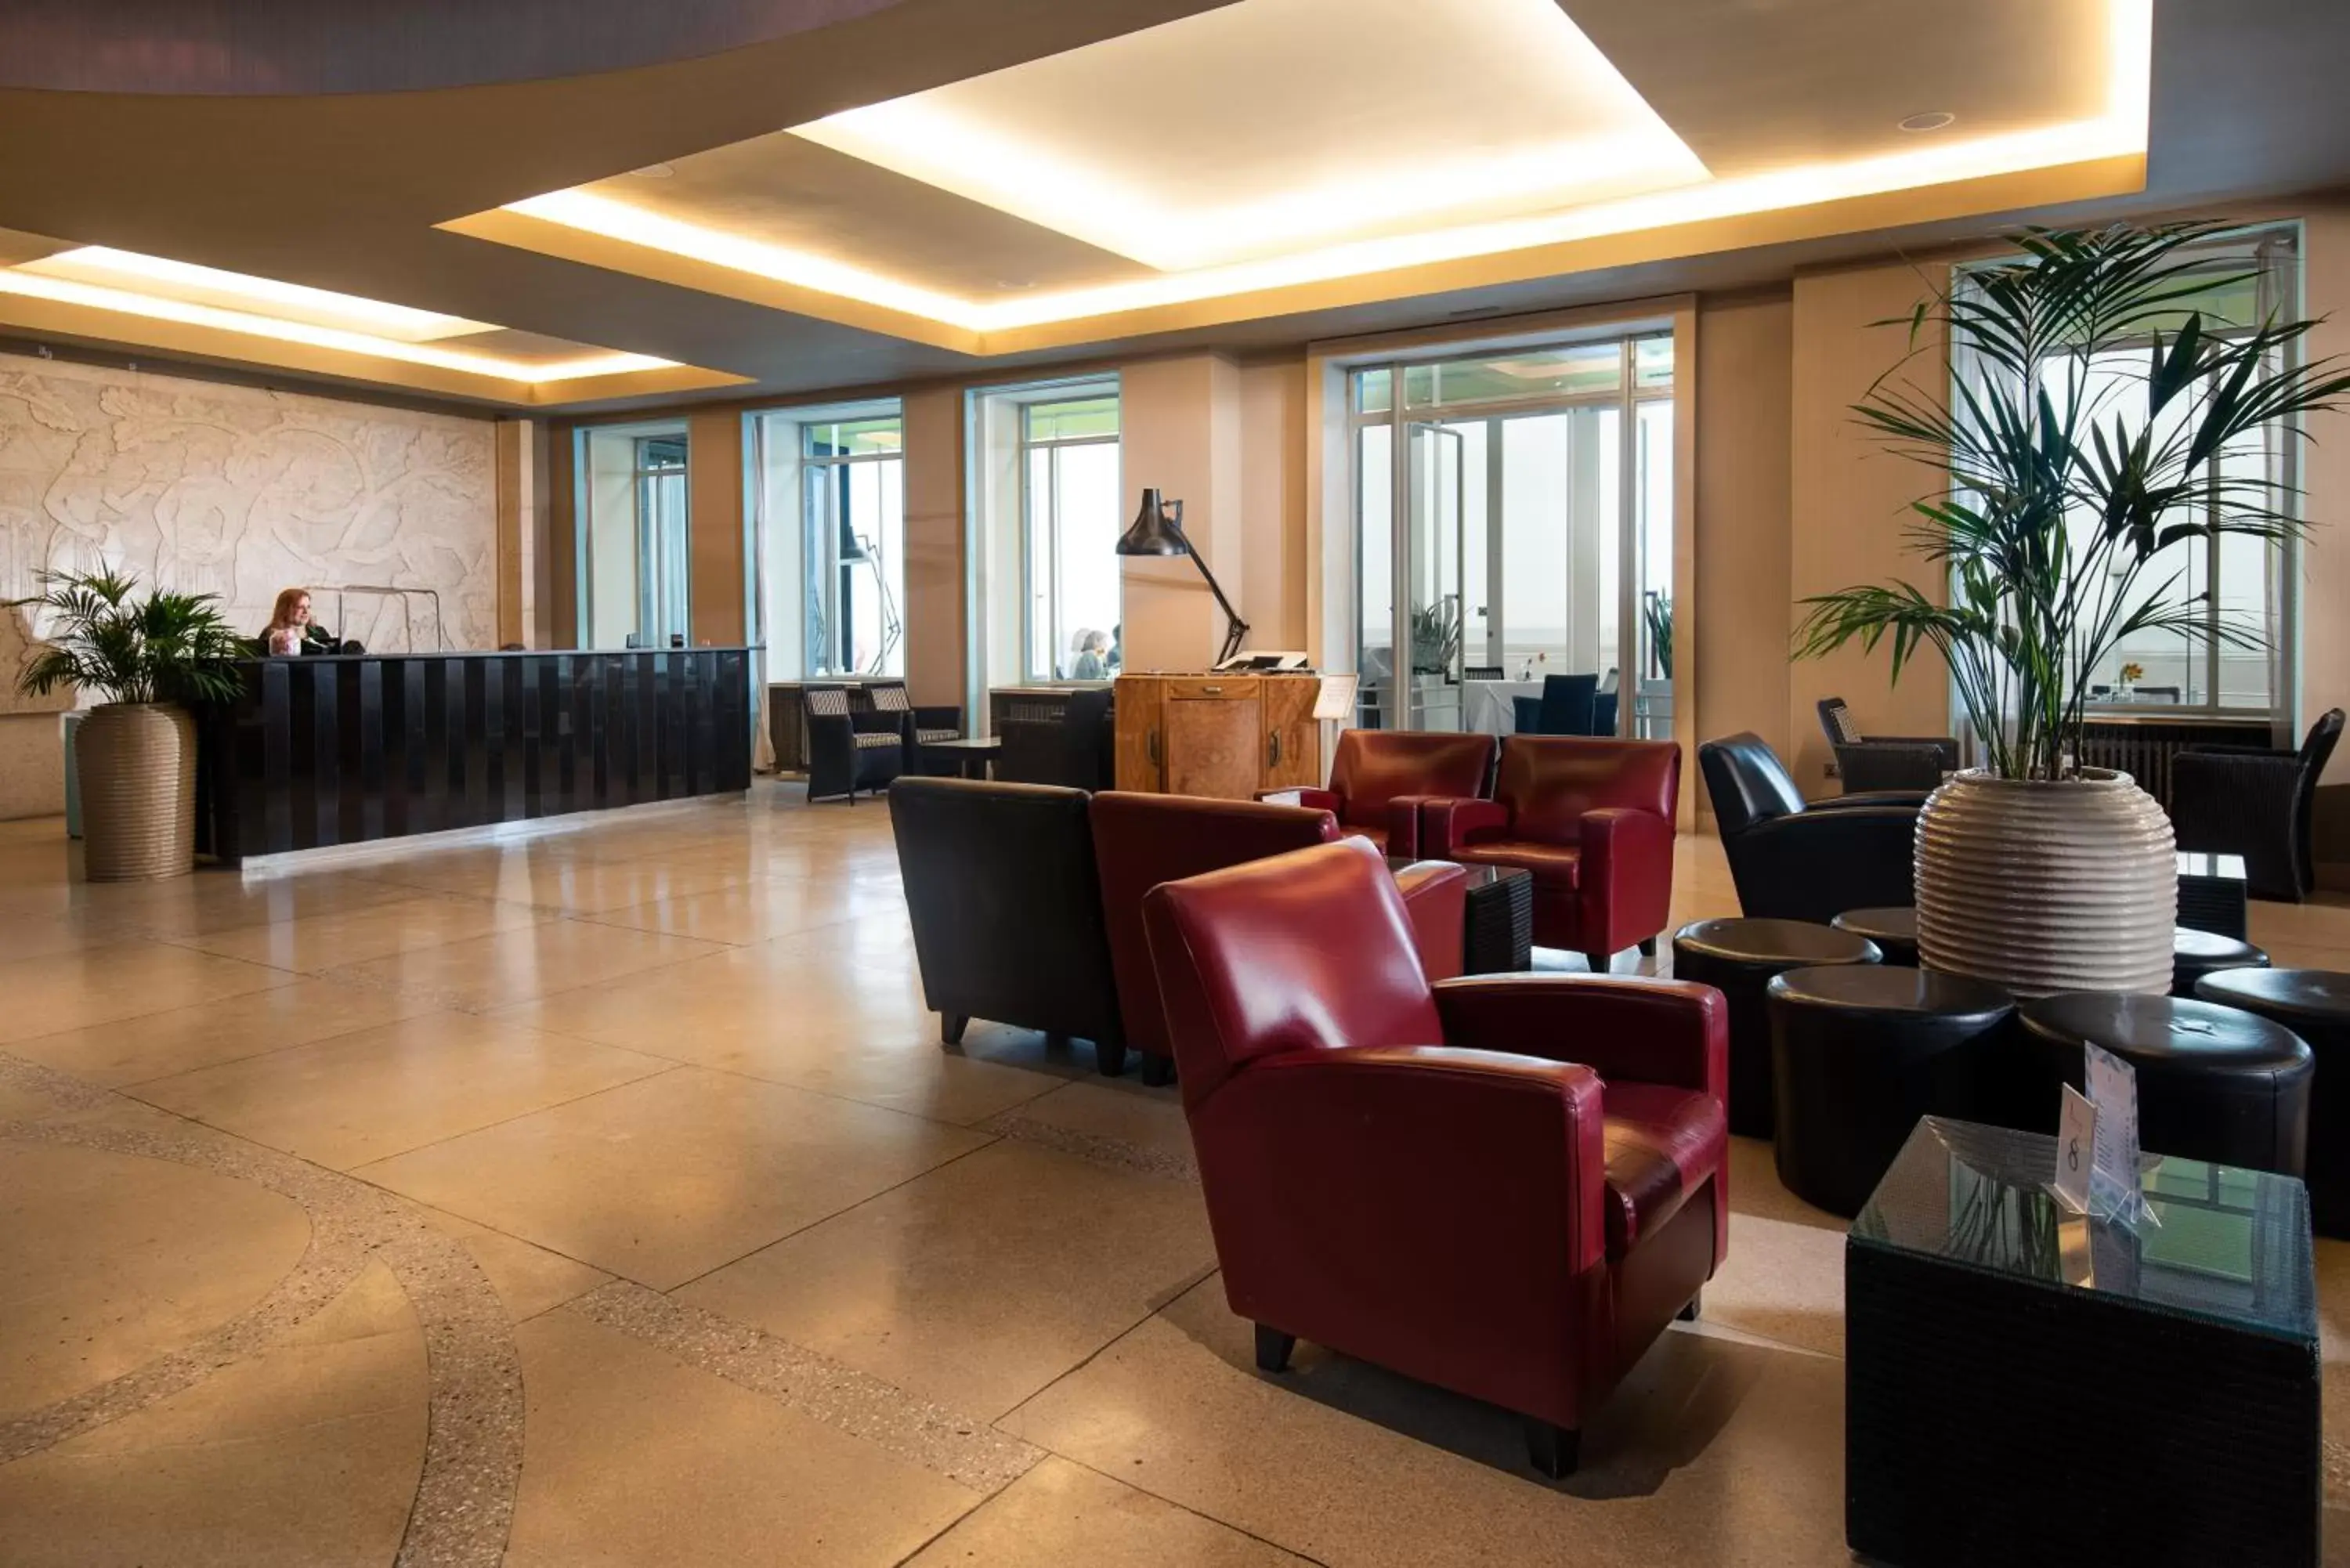 Lobby or reception, Lobby/Reception in Midland Hotel